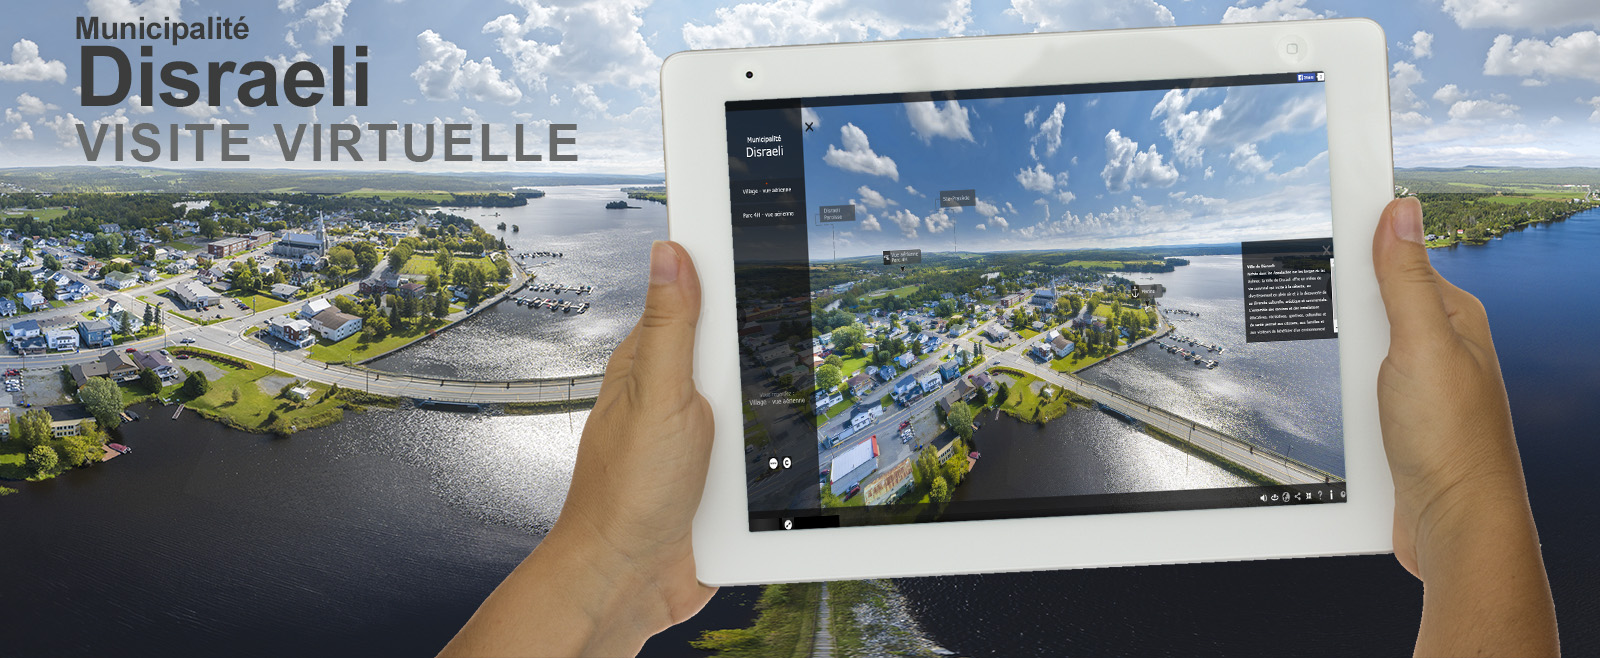 Visite virtuelle 360 degrés de la ville de Disraeli